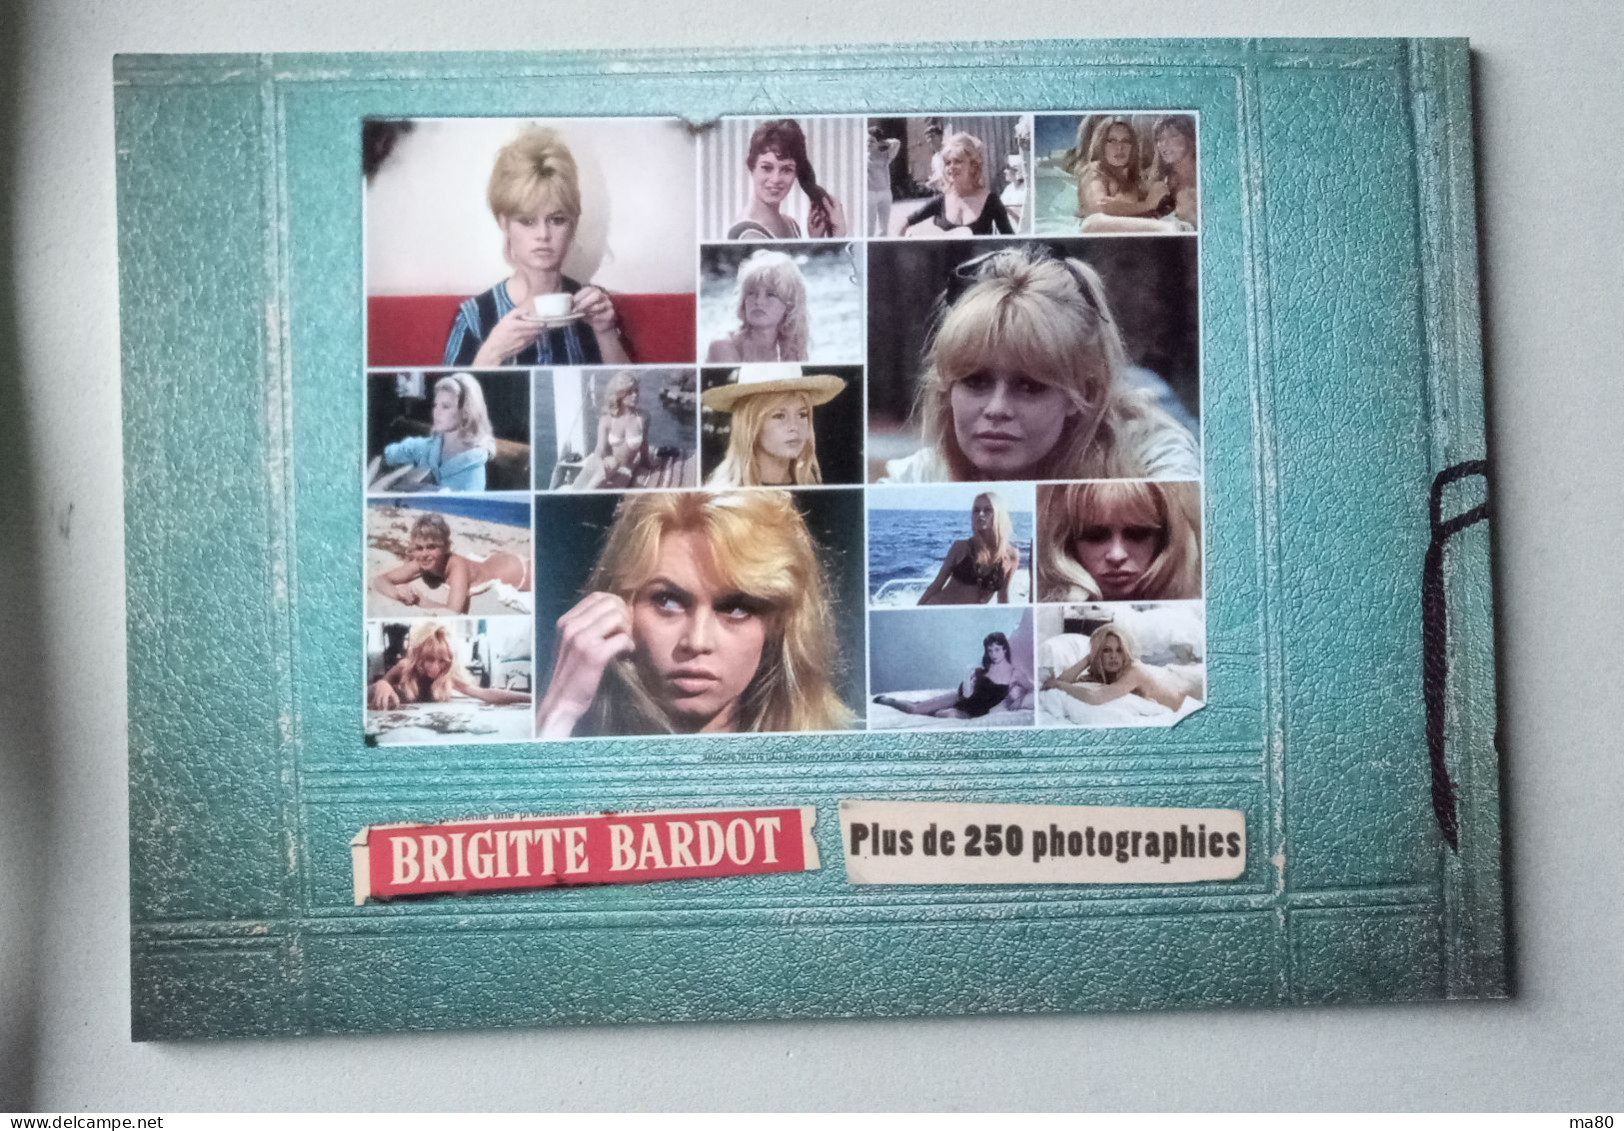 Brigitte Bardot Libro 40 Pag. 250 Foto Erotiche Sexy Anni 50 60 70 80 Circa, Cinema Film Vita Privata - Cinema & Music